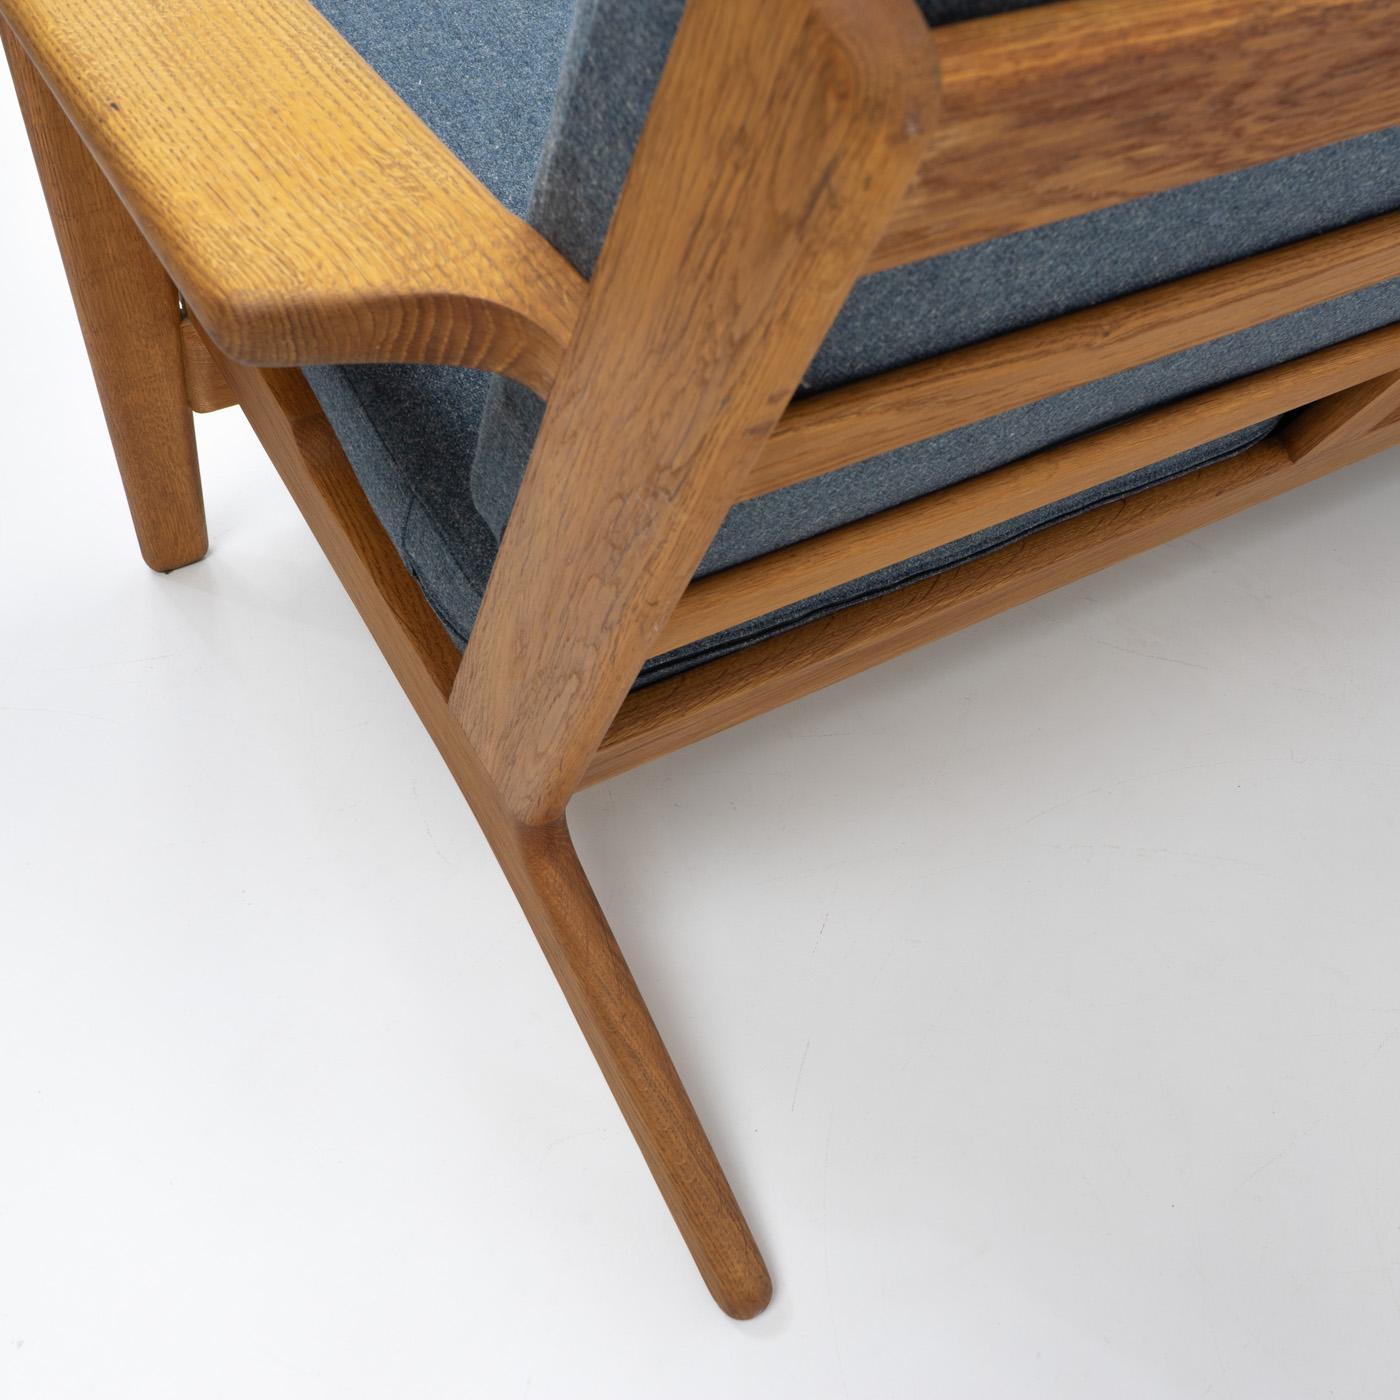 Einer der bekanntesten Entwürfe von Hans Wegner und wahrscheinlich der gesamten dänischen Mid-Century-Moderne ist das Sofa und der Sessel GE 290 von Getama. Die Serie 290 ist an den langen Armlehnen im Stil eines Bügelbretts